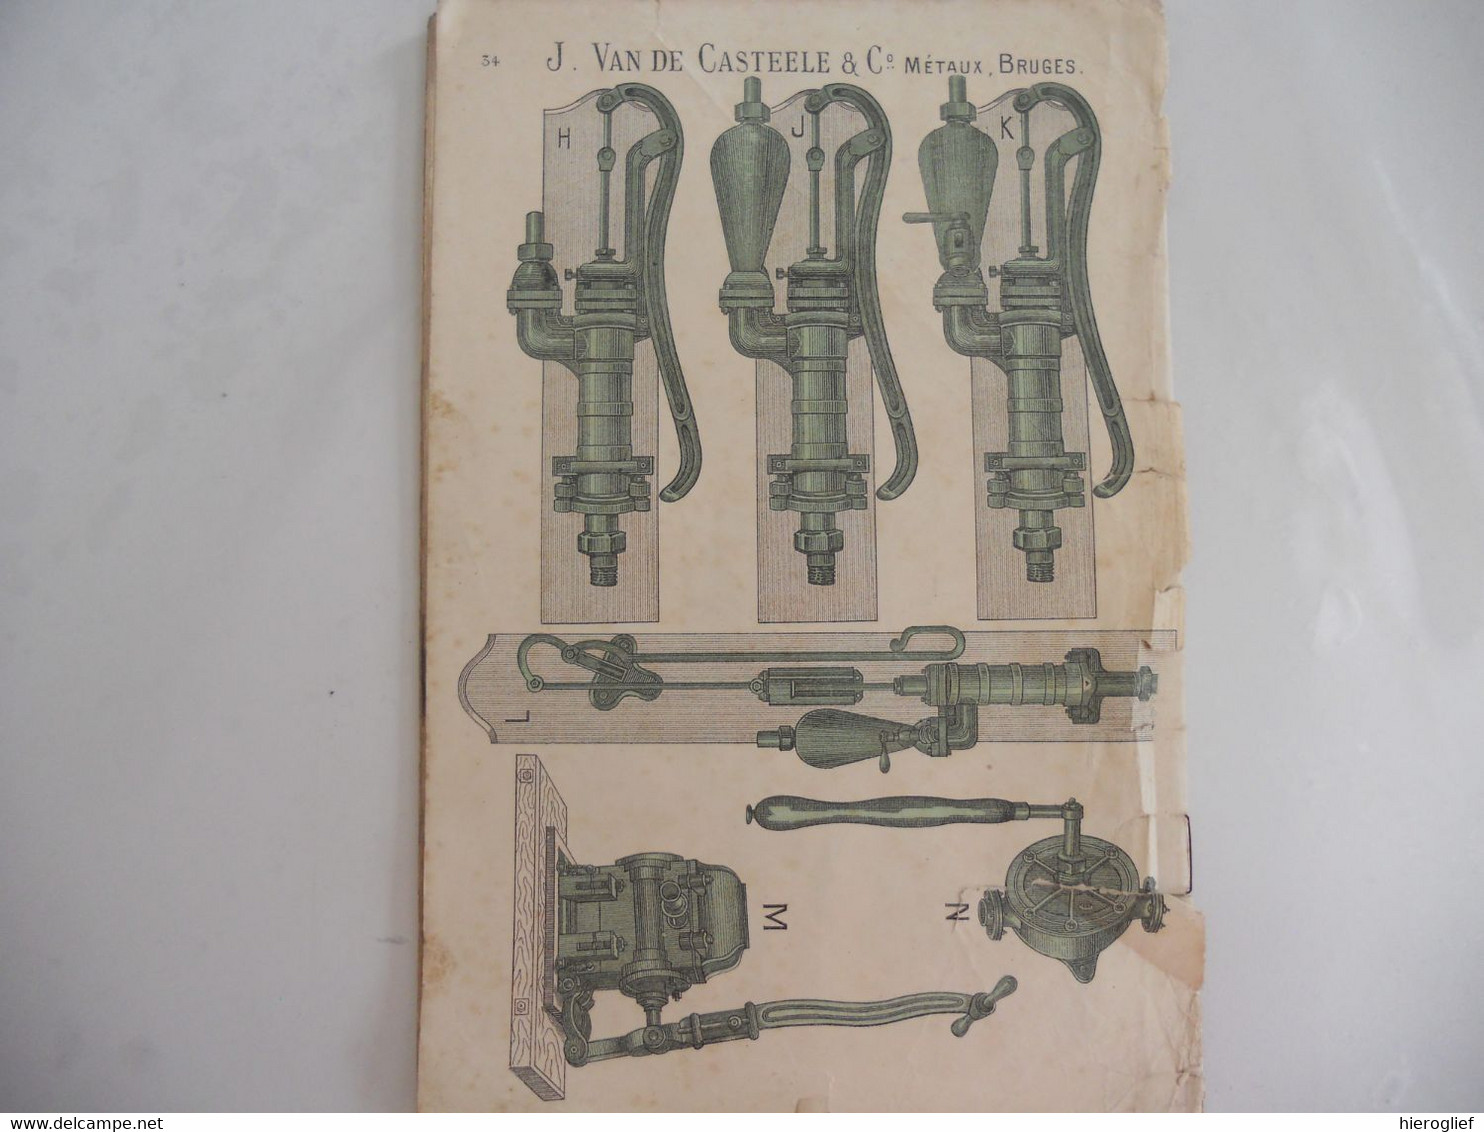 J. Van de Casteele & C° Métaux Bruges catalogue brugge ijzerwaren WATERPOMPEN